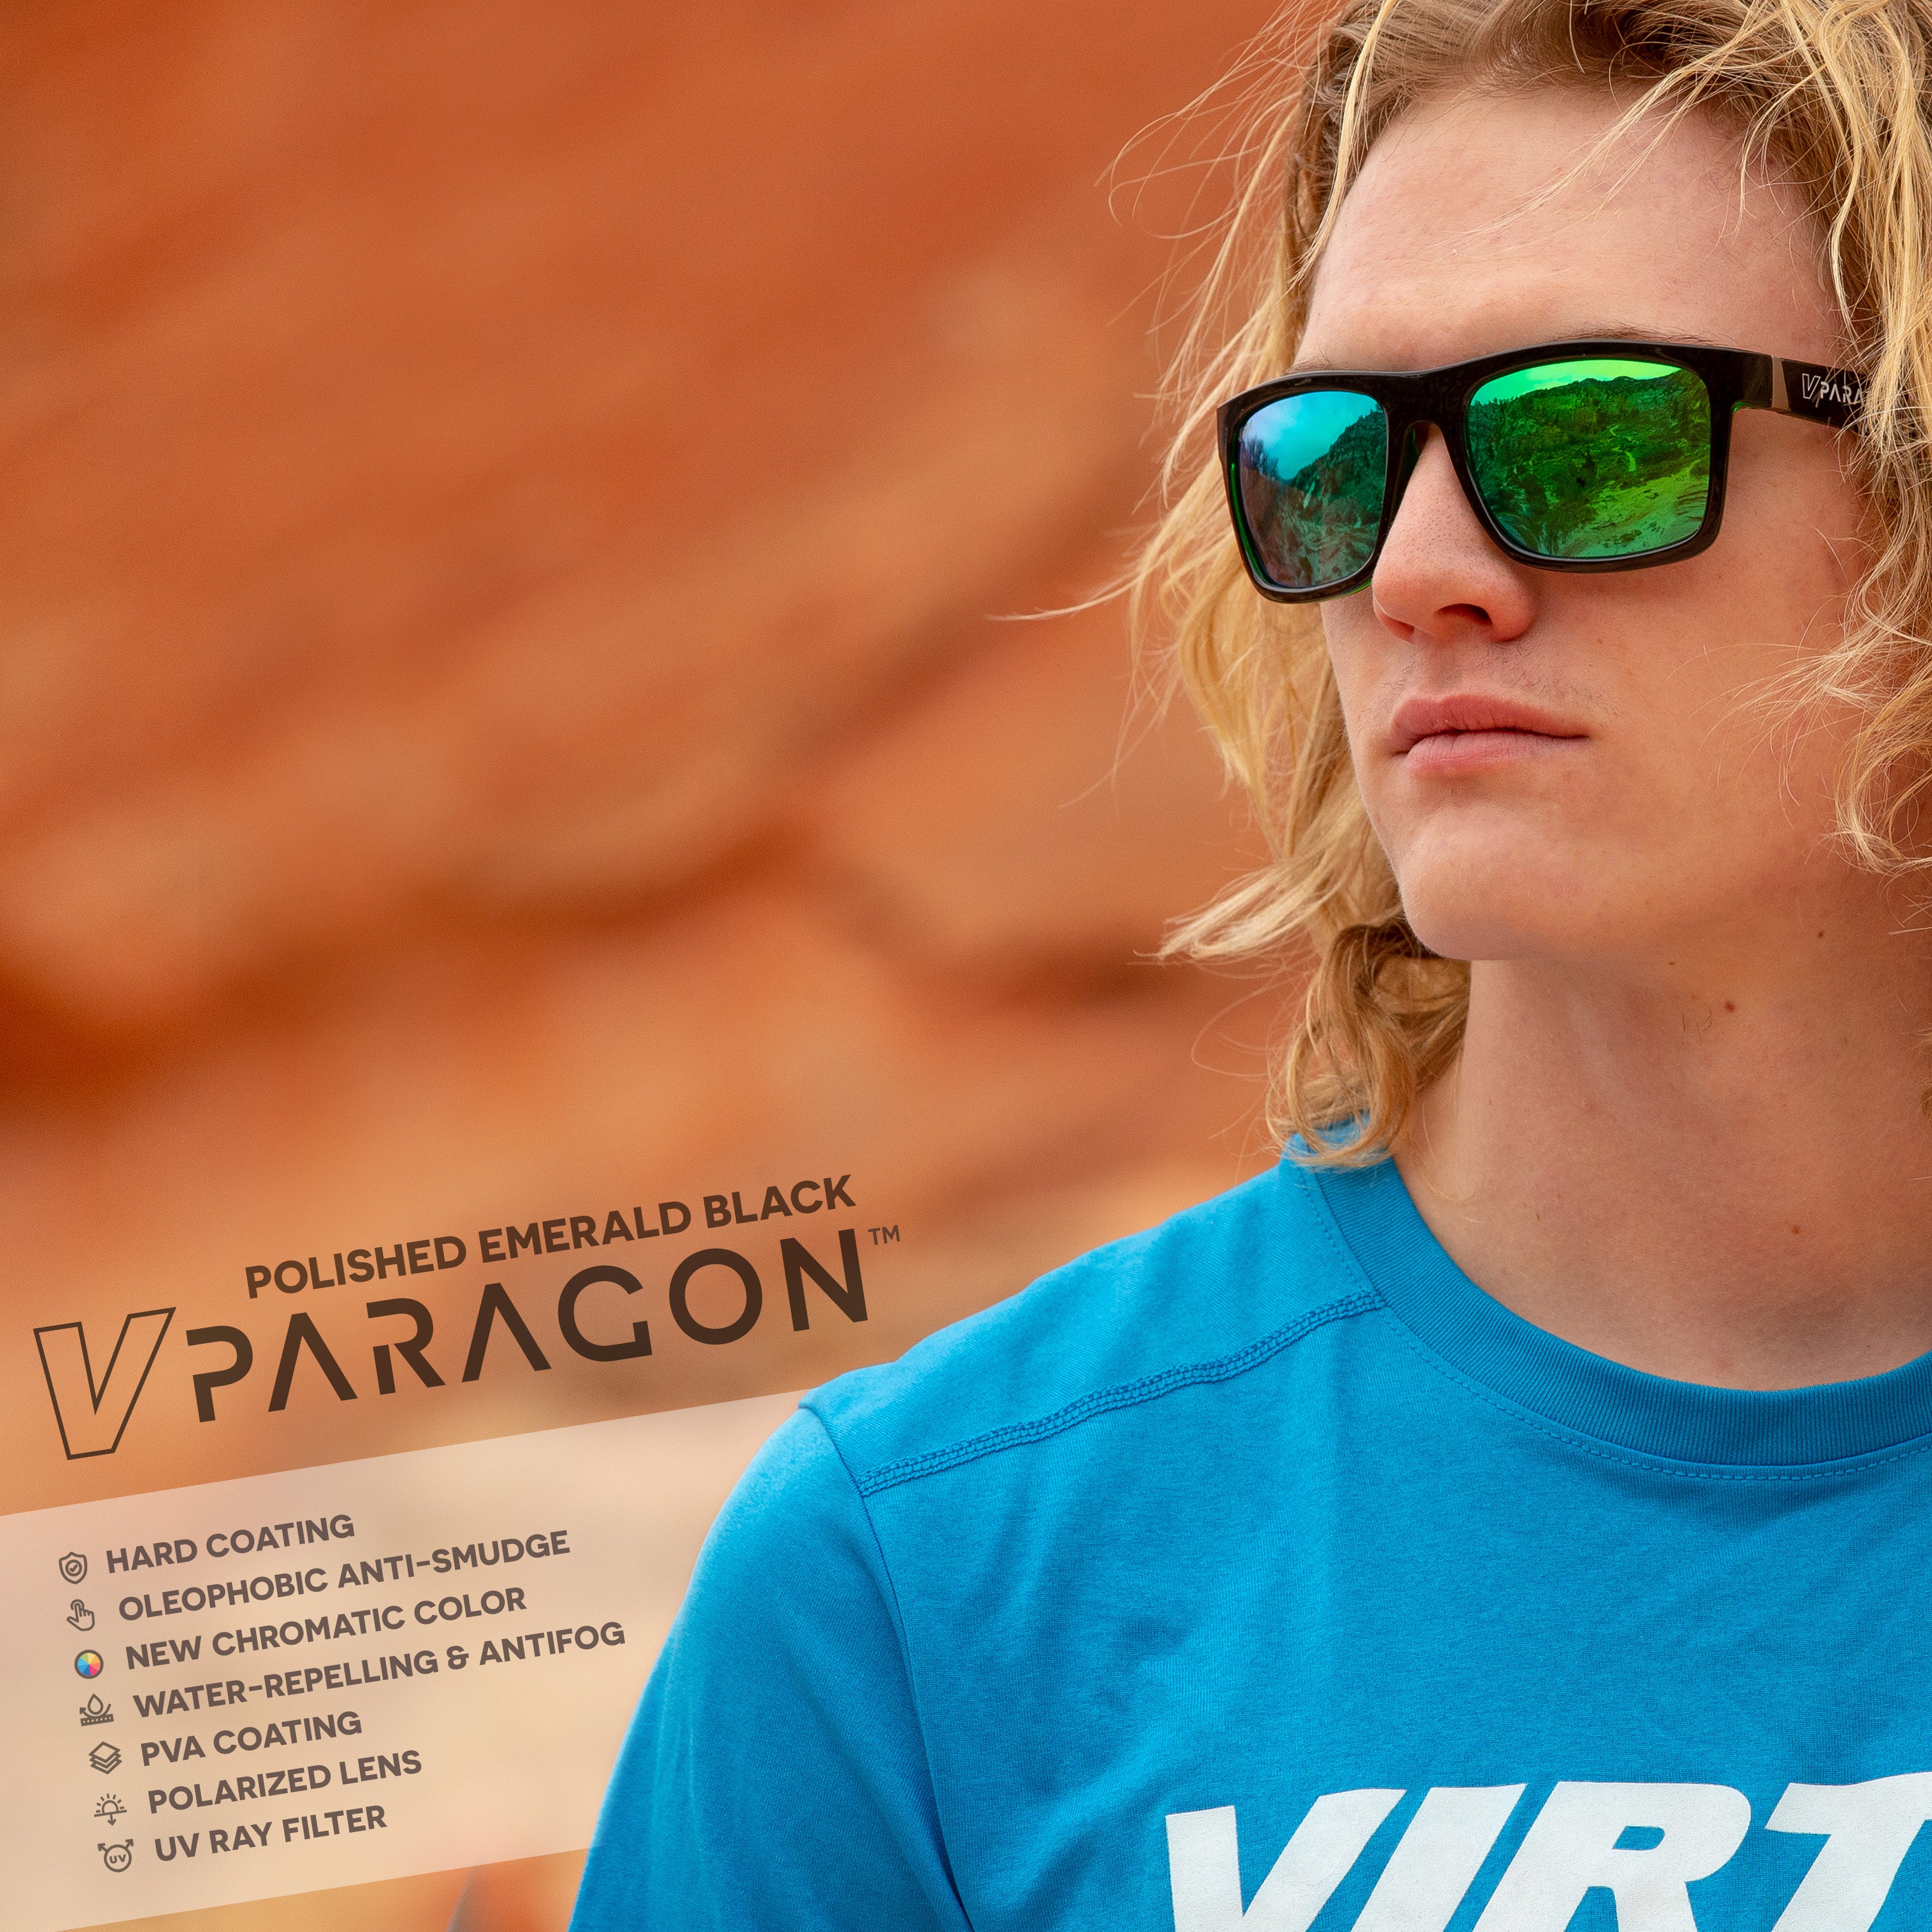 Virtue V-Paragon Polarized Sunglasses - Polished Emerald Black